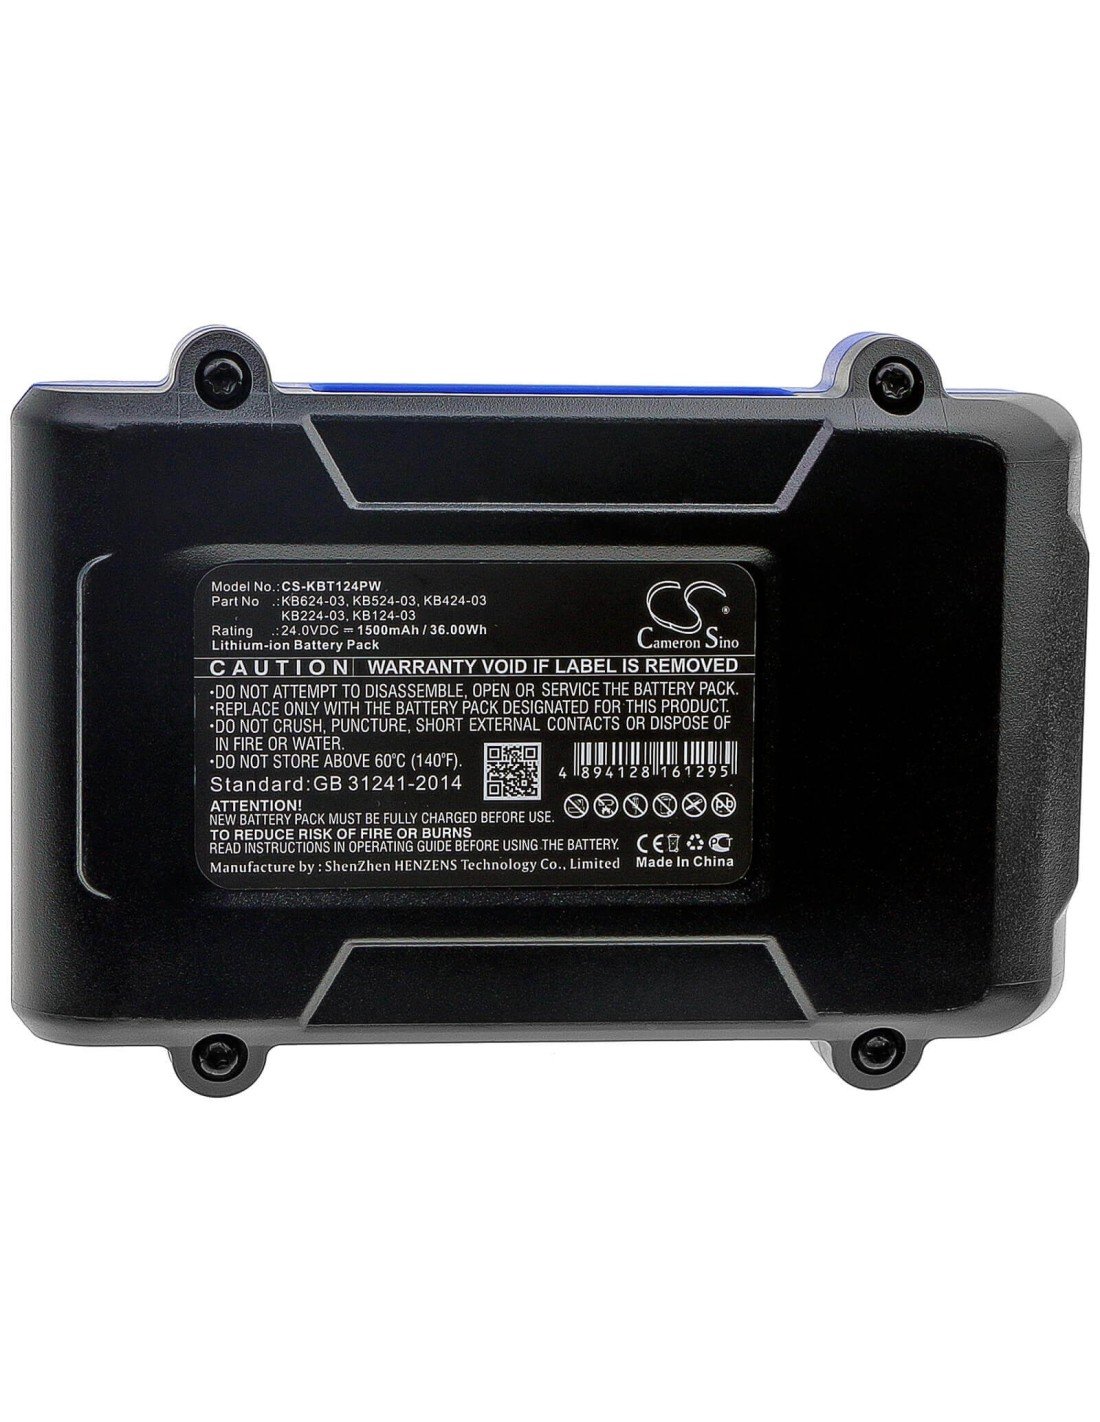 Battery for Kobalt, 856455, 1518740, Kdd 524b-03 24V, 1500mAh - 36.00Wh